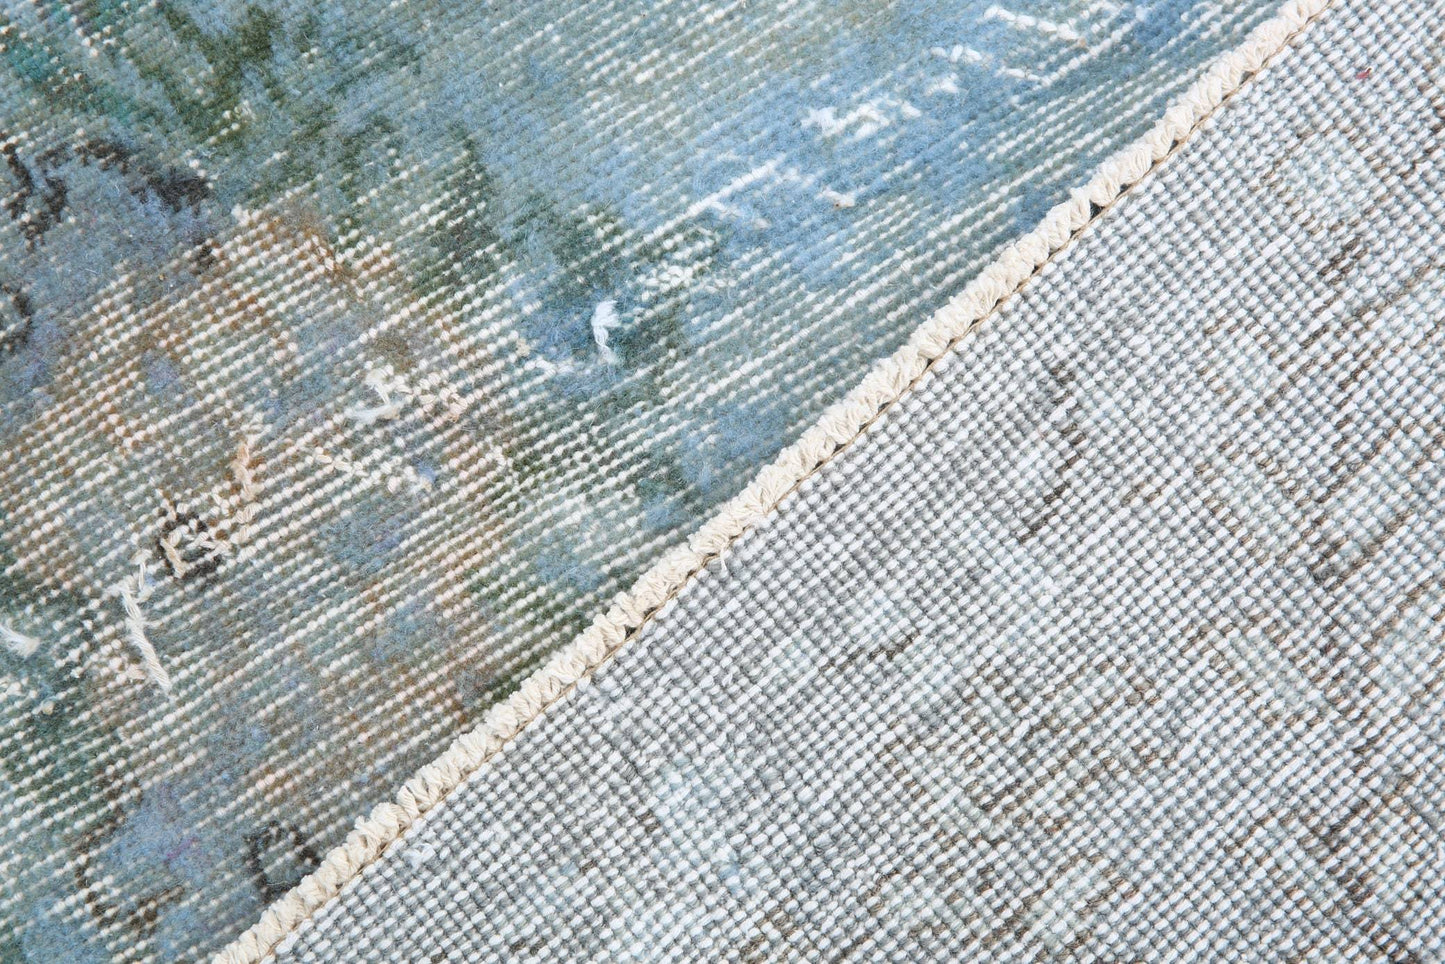 7' x 10' Vintage rug, Blue Vintage rug, Cotton Vintage rug, Dorm Vintage rug, Kids Vintage rug, Living Room Vintage rug, Nursery Vintage rug, Office Vintage rug, Oriental Vintage rug, Rustic-Primitive Vintage rug, Vintage, Wool Vintage rug, Vintage rug